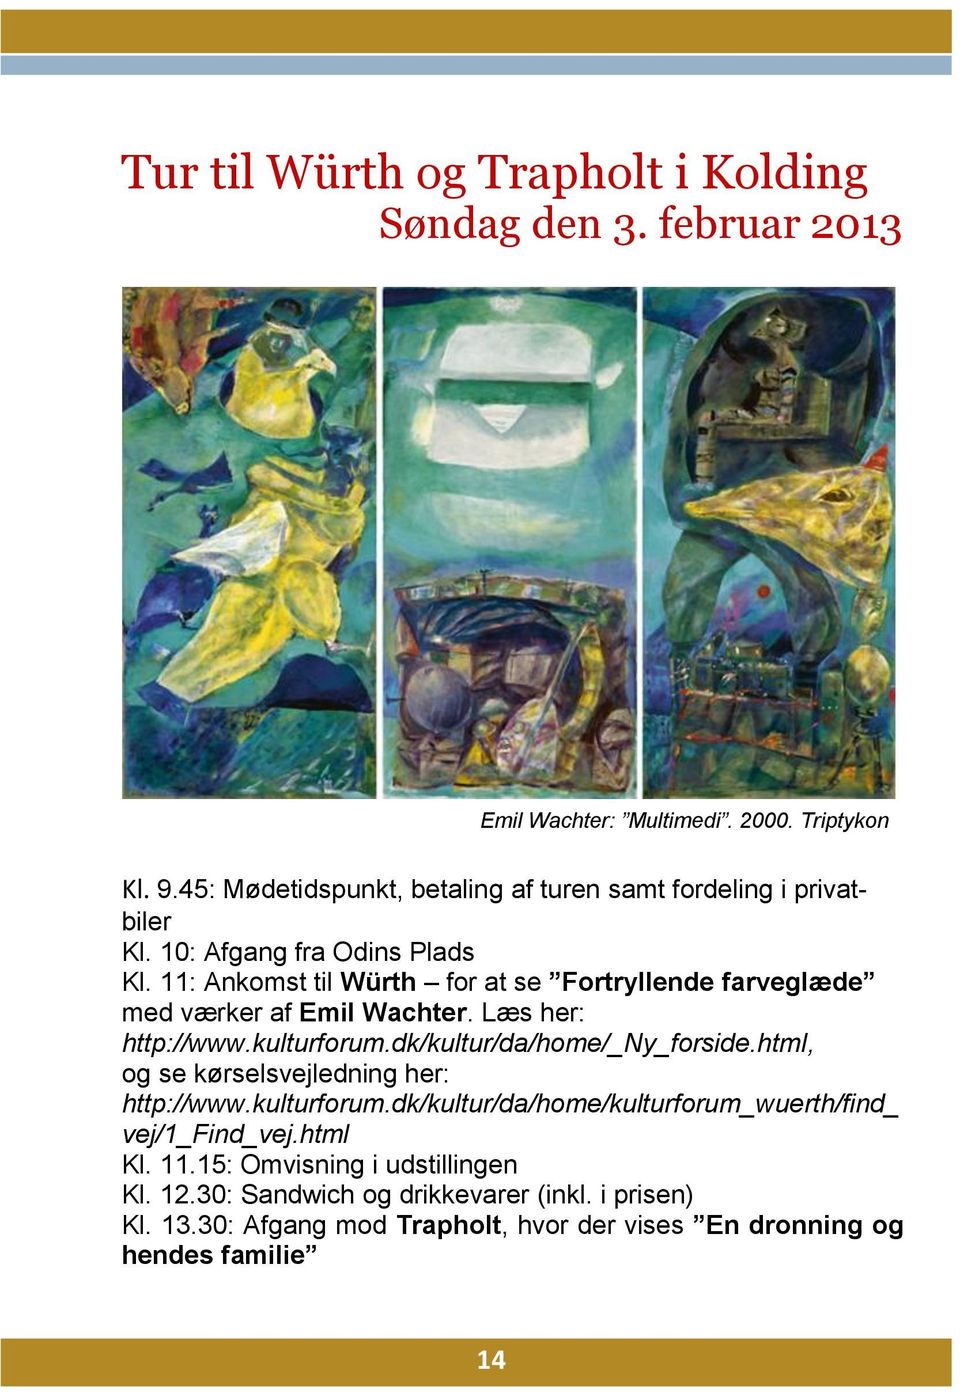 11: Ankomst til Würth for at se Fortryllende farveglæde med værker af Emil Wachter. Læs her: http://www.kulturforum.dk/kultur/da/home/_ny_forside.